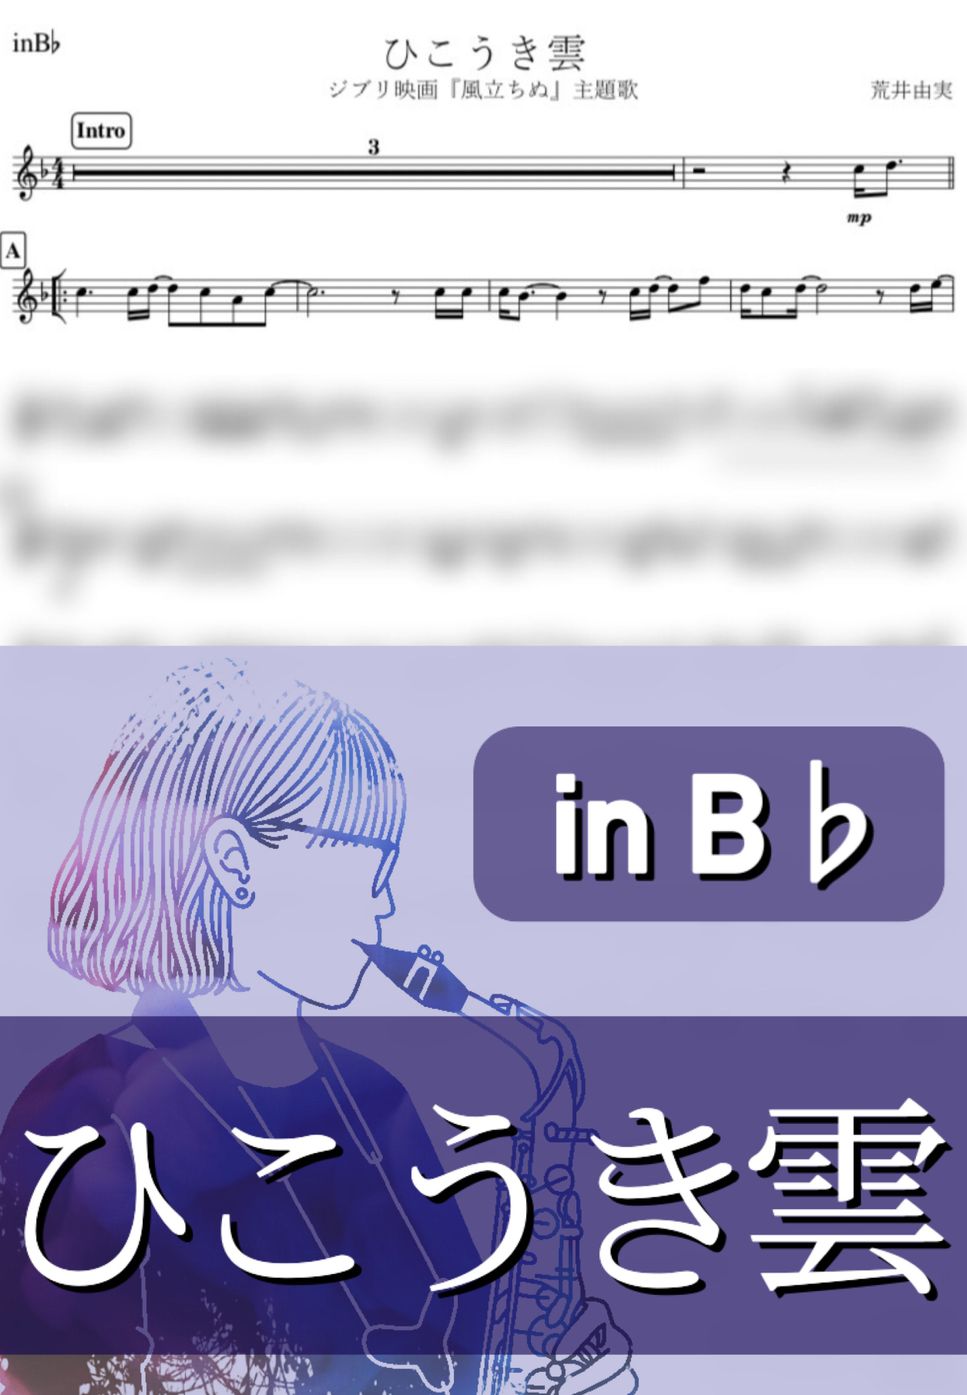 荒井由実 - ひこうき雲 (B♭) by kanamusic